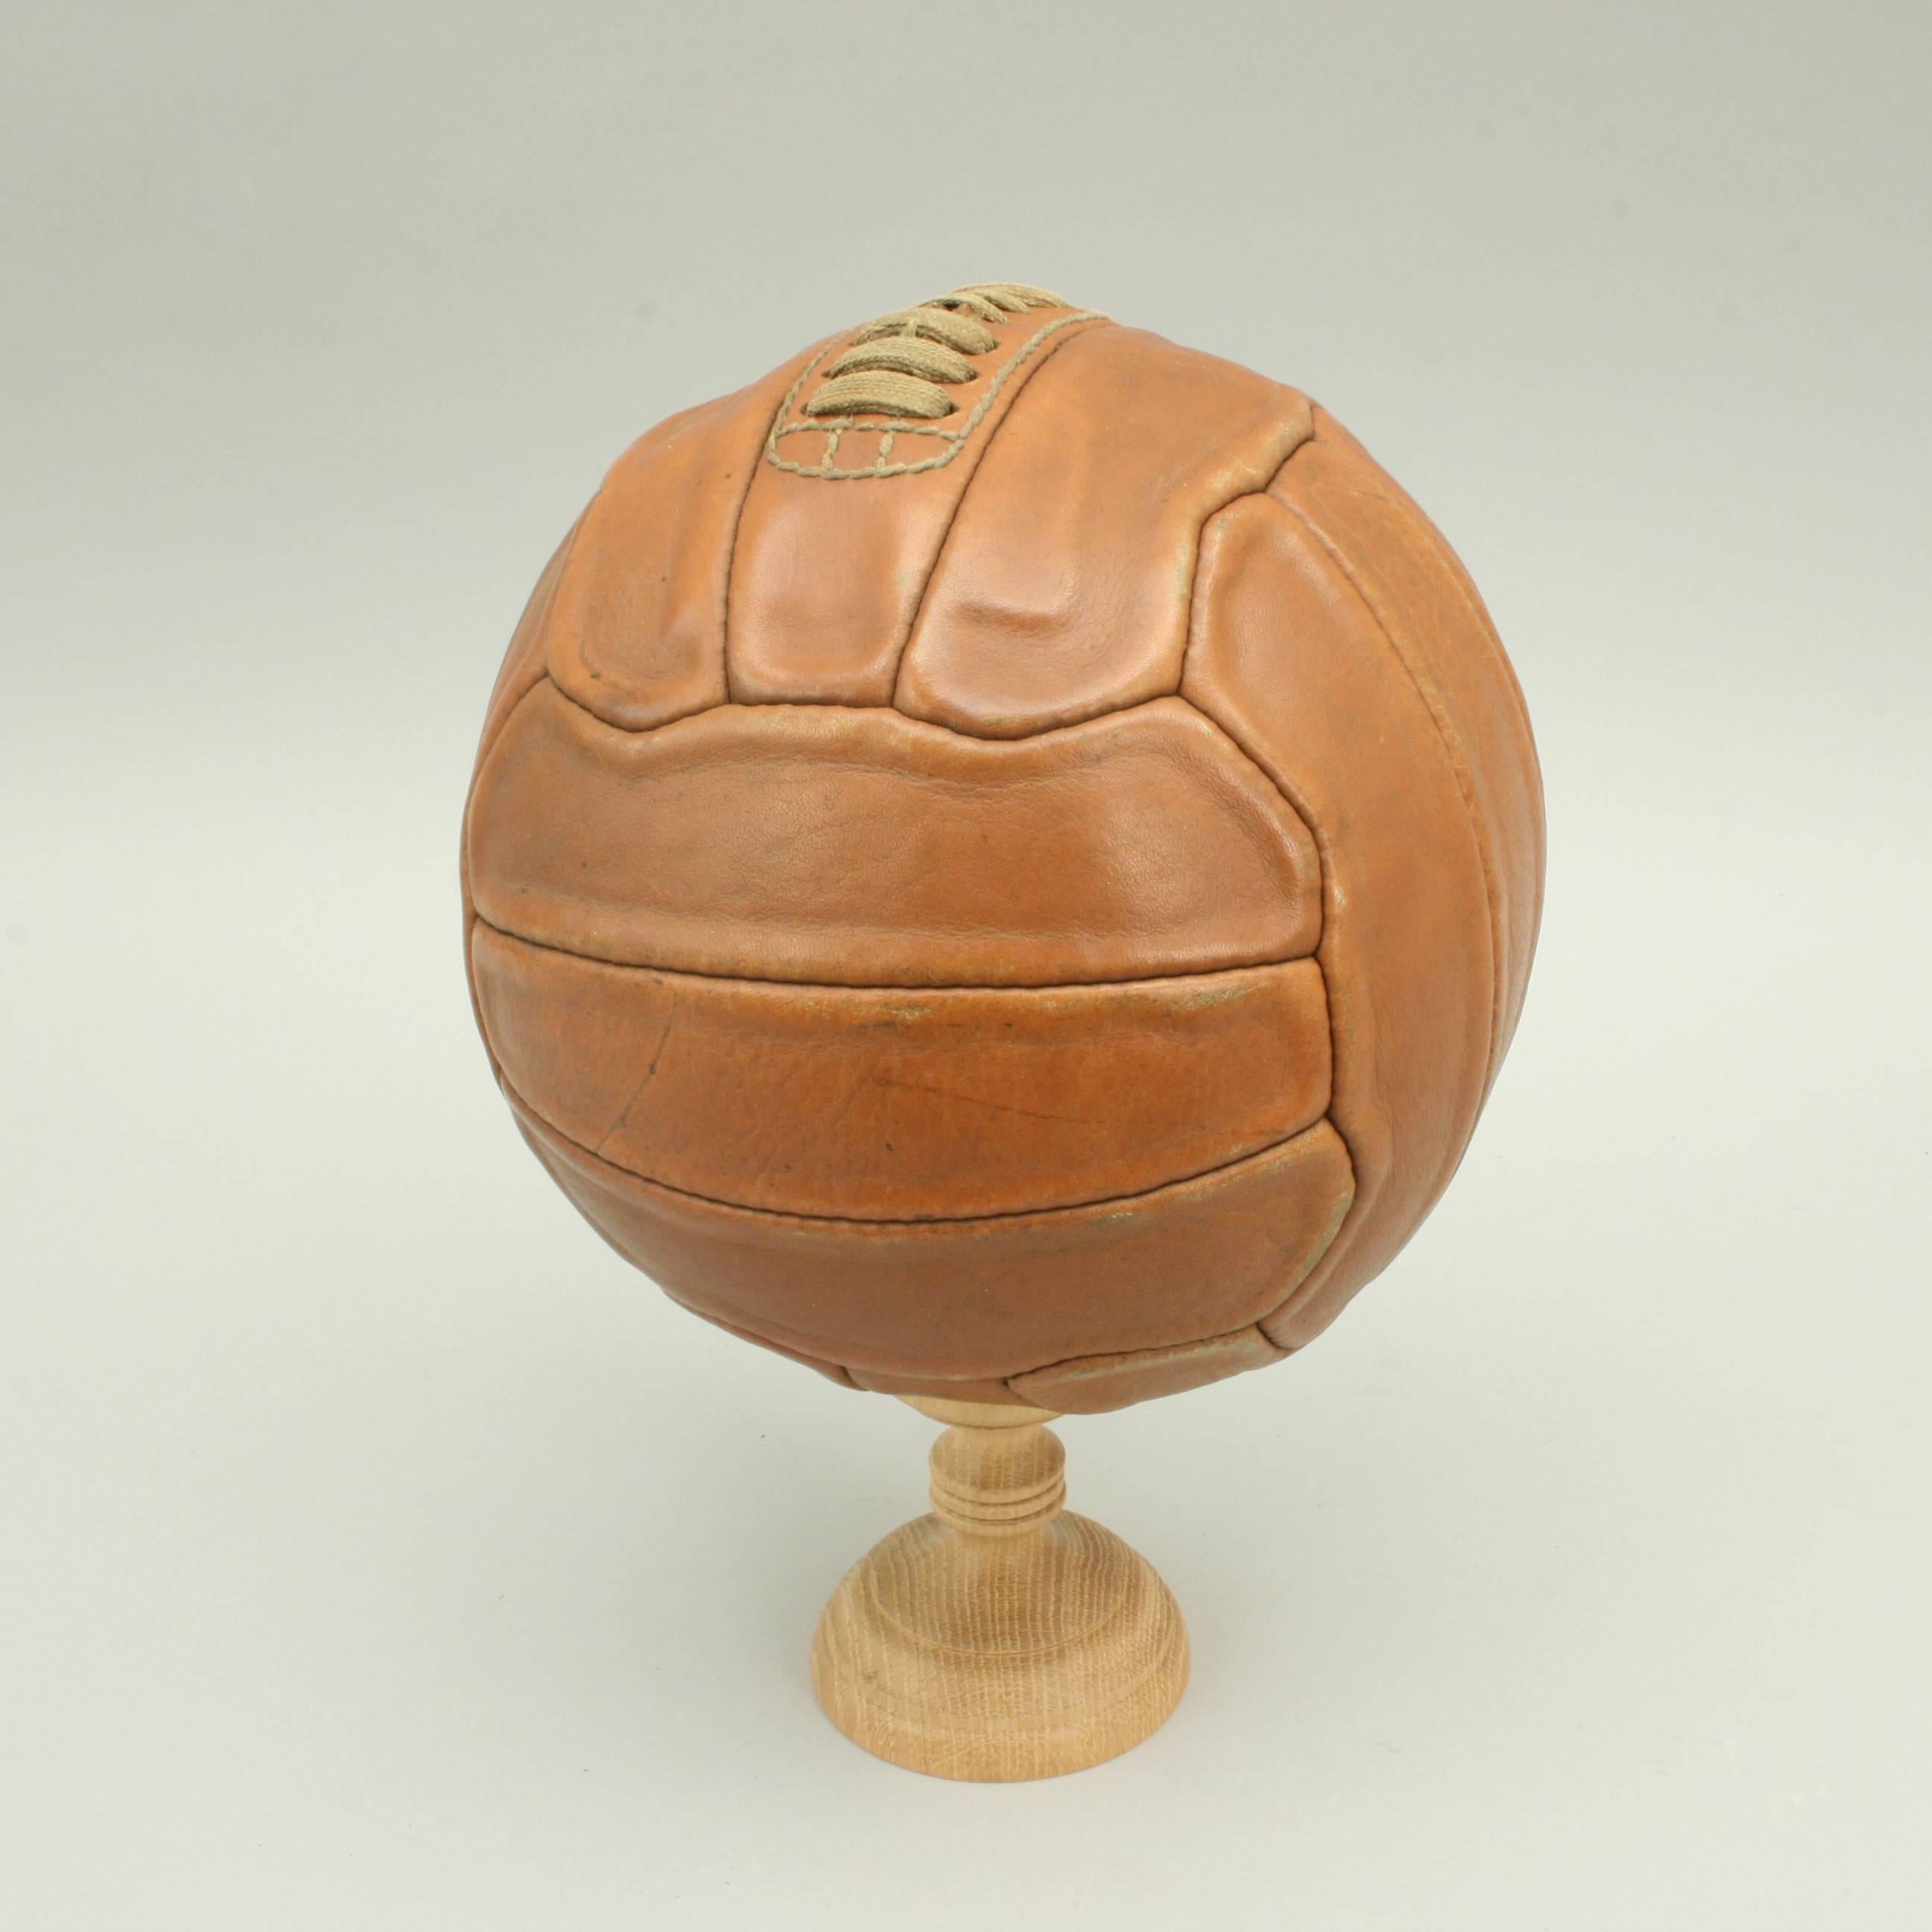 casey ball football